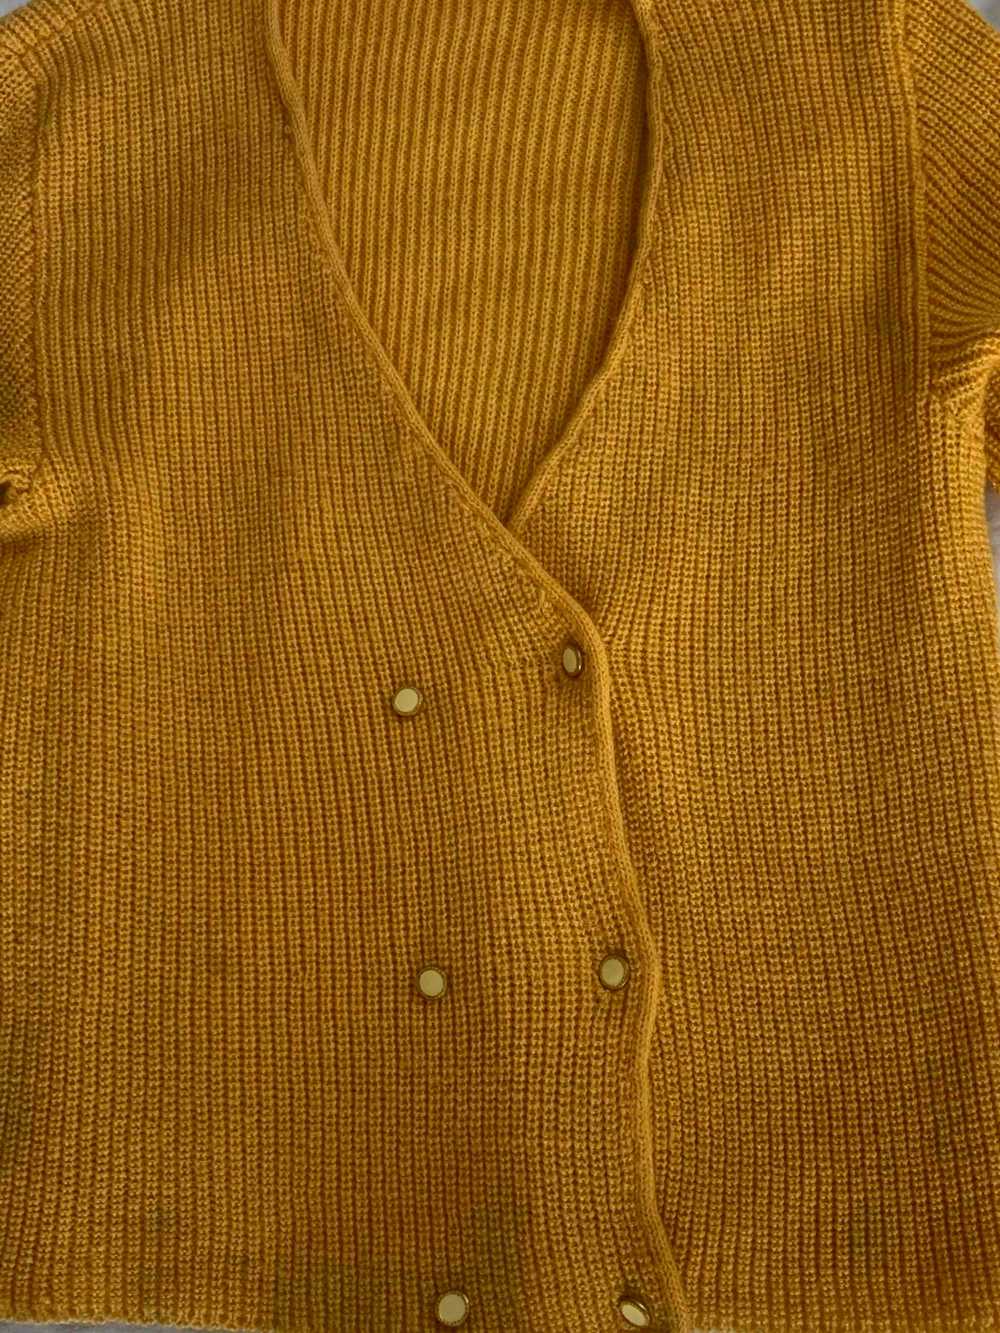 Cardigan en crochet - Cardigan en crochet jaune - image 5